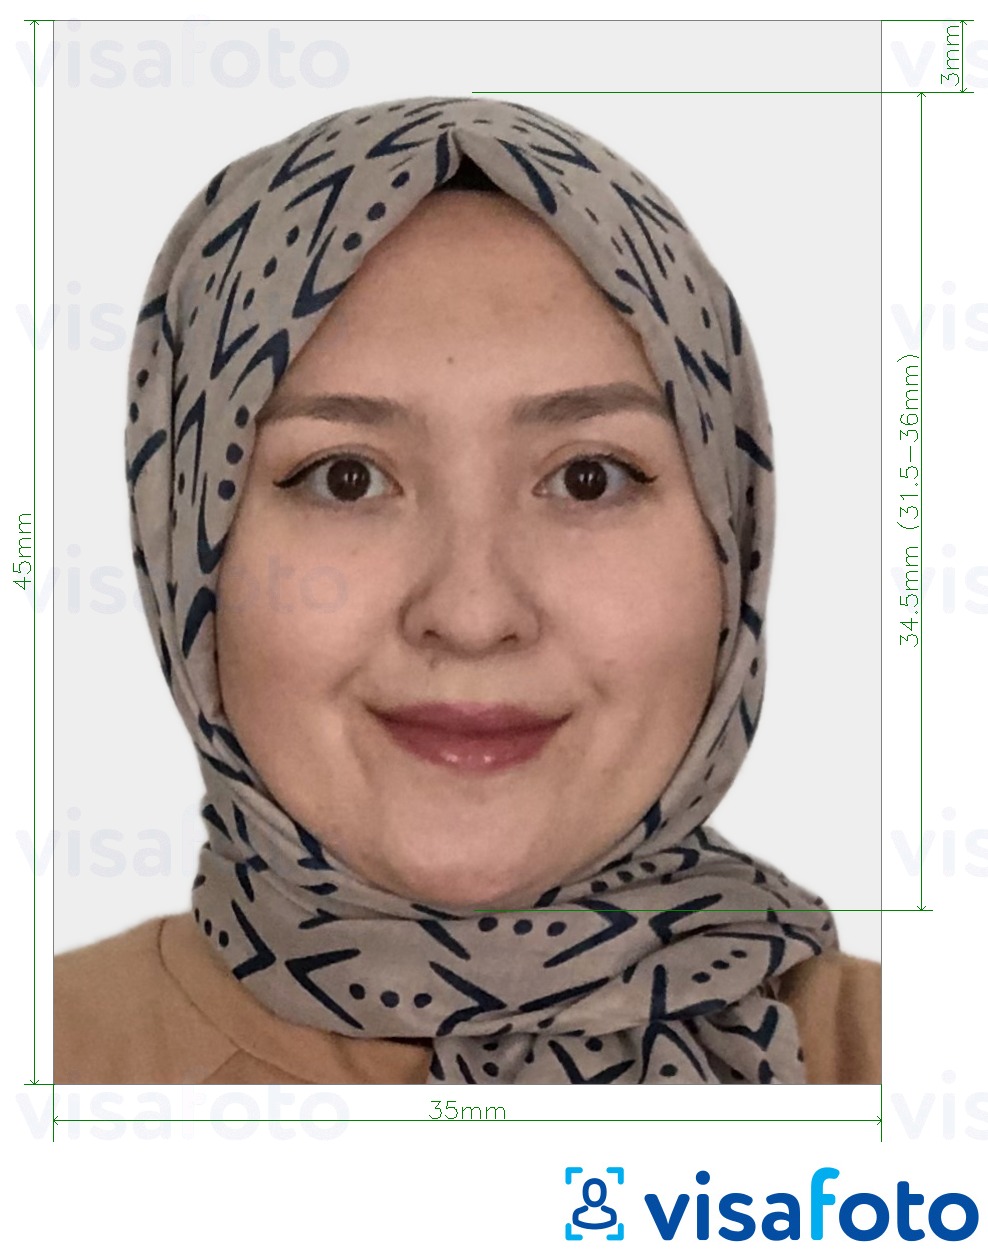 Ejemplo de foto para Indonesia Visa 35x45 mm (3.5x4.5 cm) con la especificación del tamaño exacto